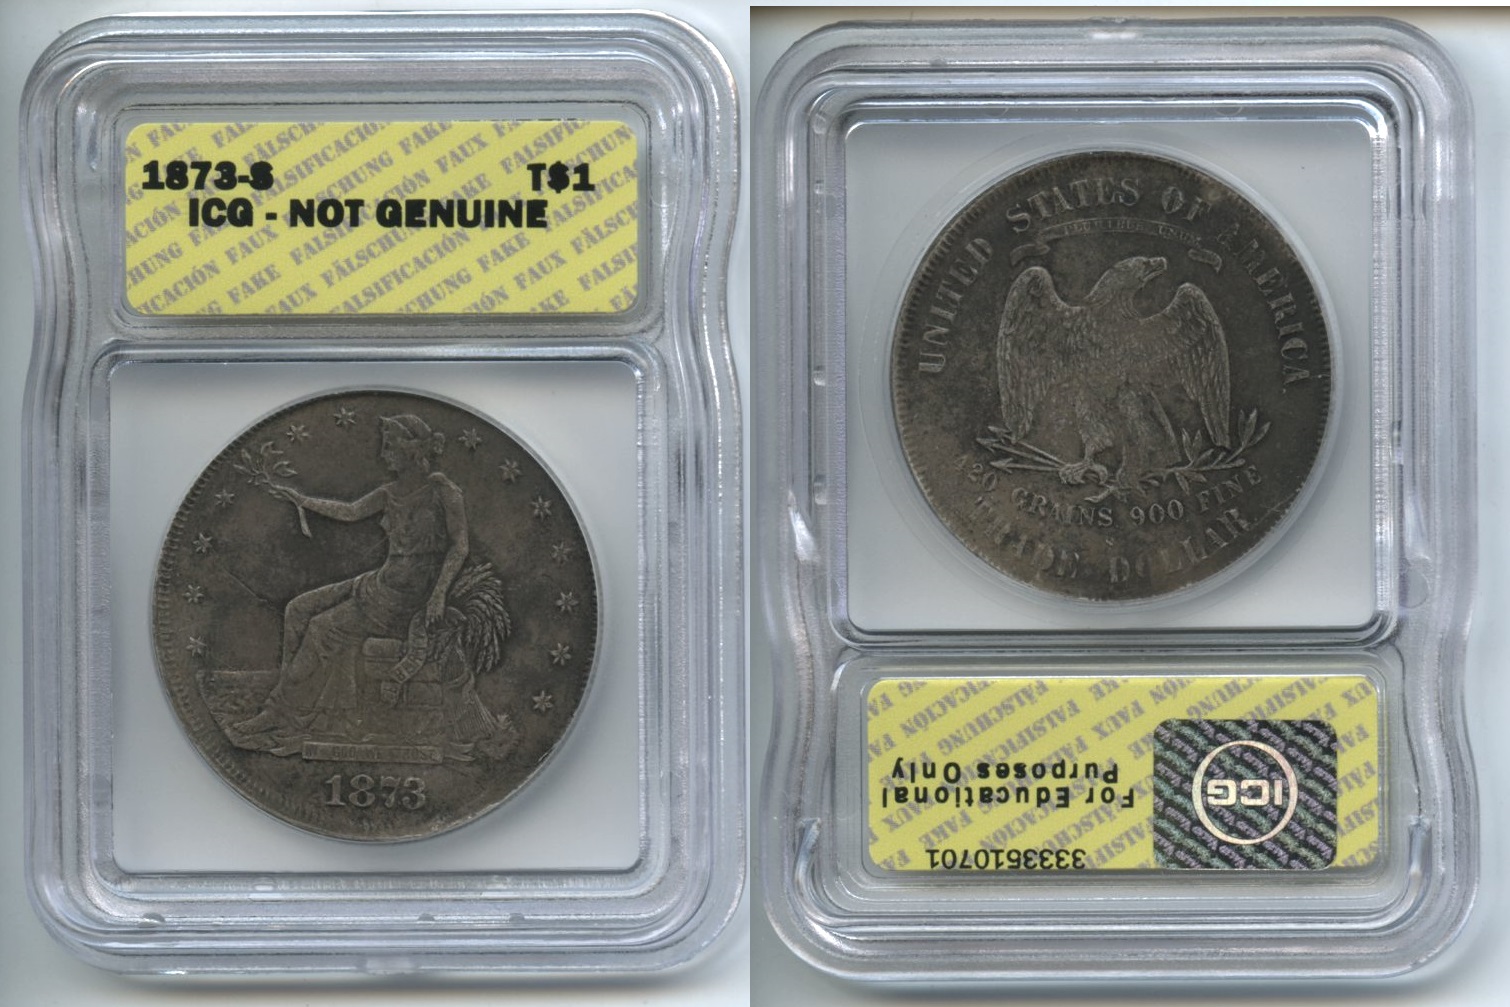 Alaska Coin Exchange Presents The 1873-S Trade Dollar ICG ...